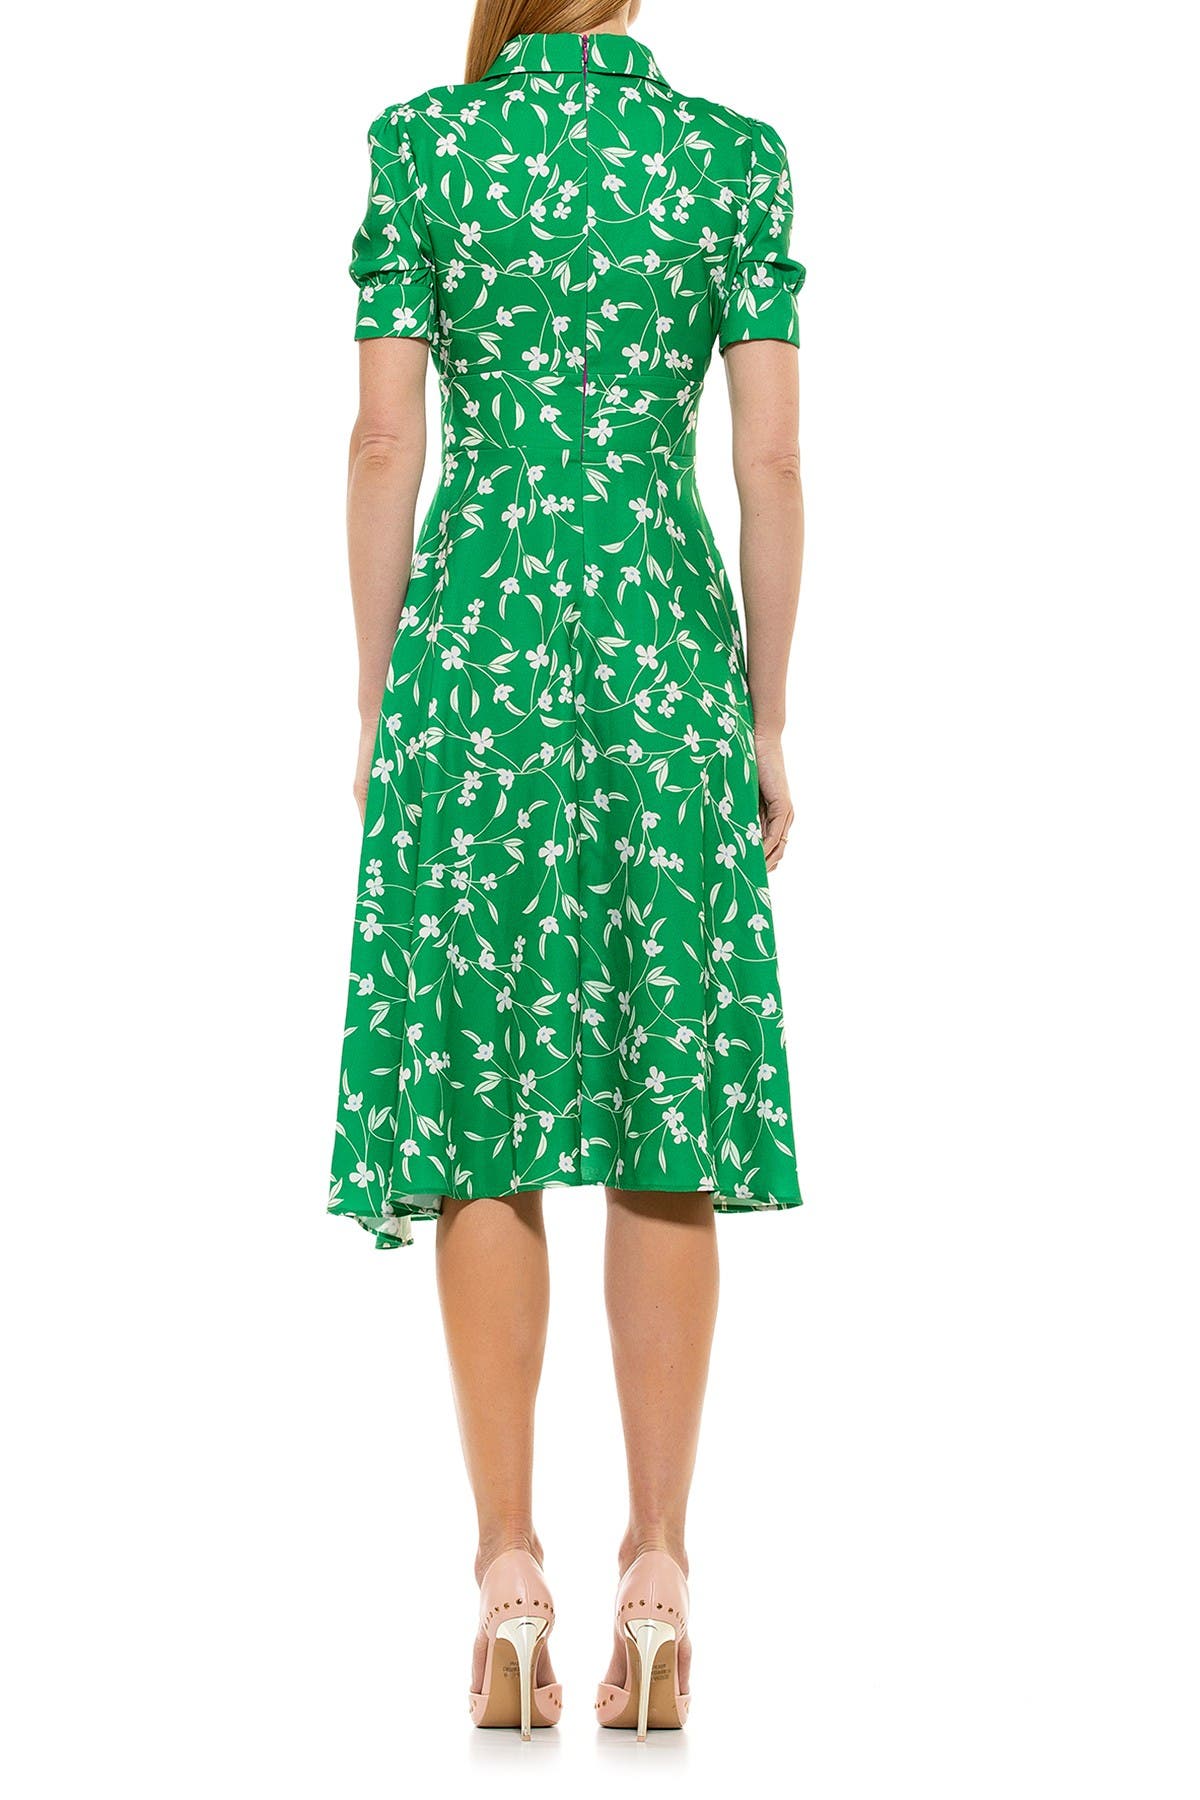 Alexia Admor Printed Spread Collar Midi Dress In Open Green7